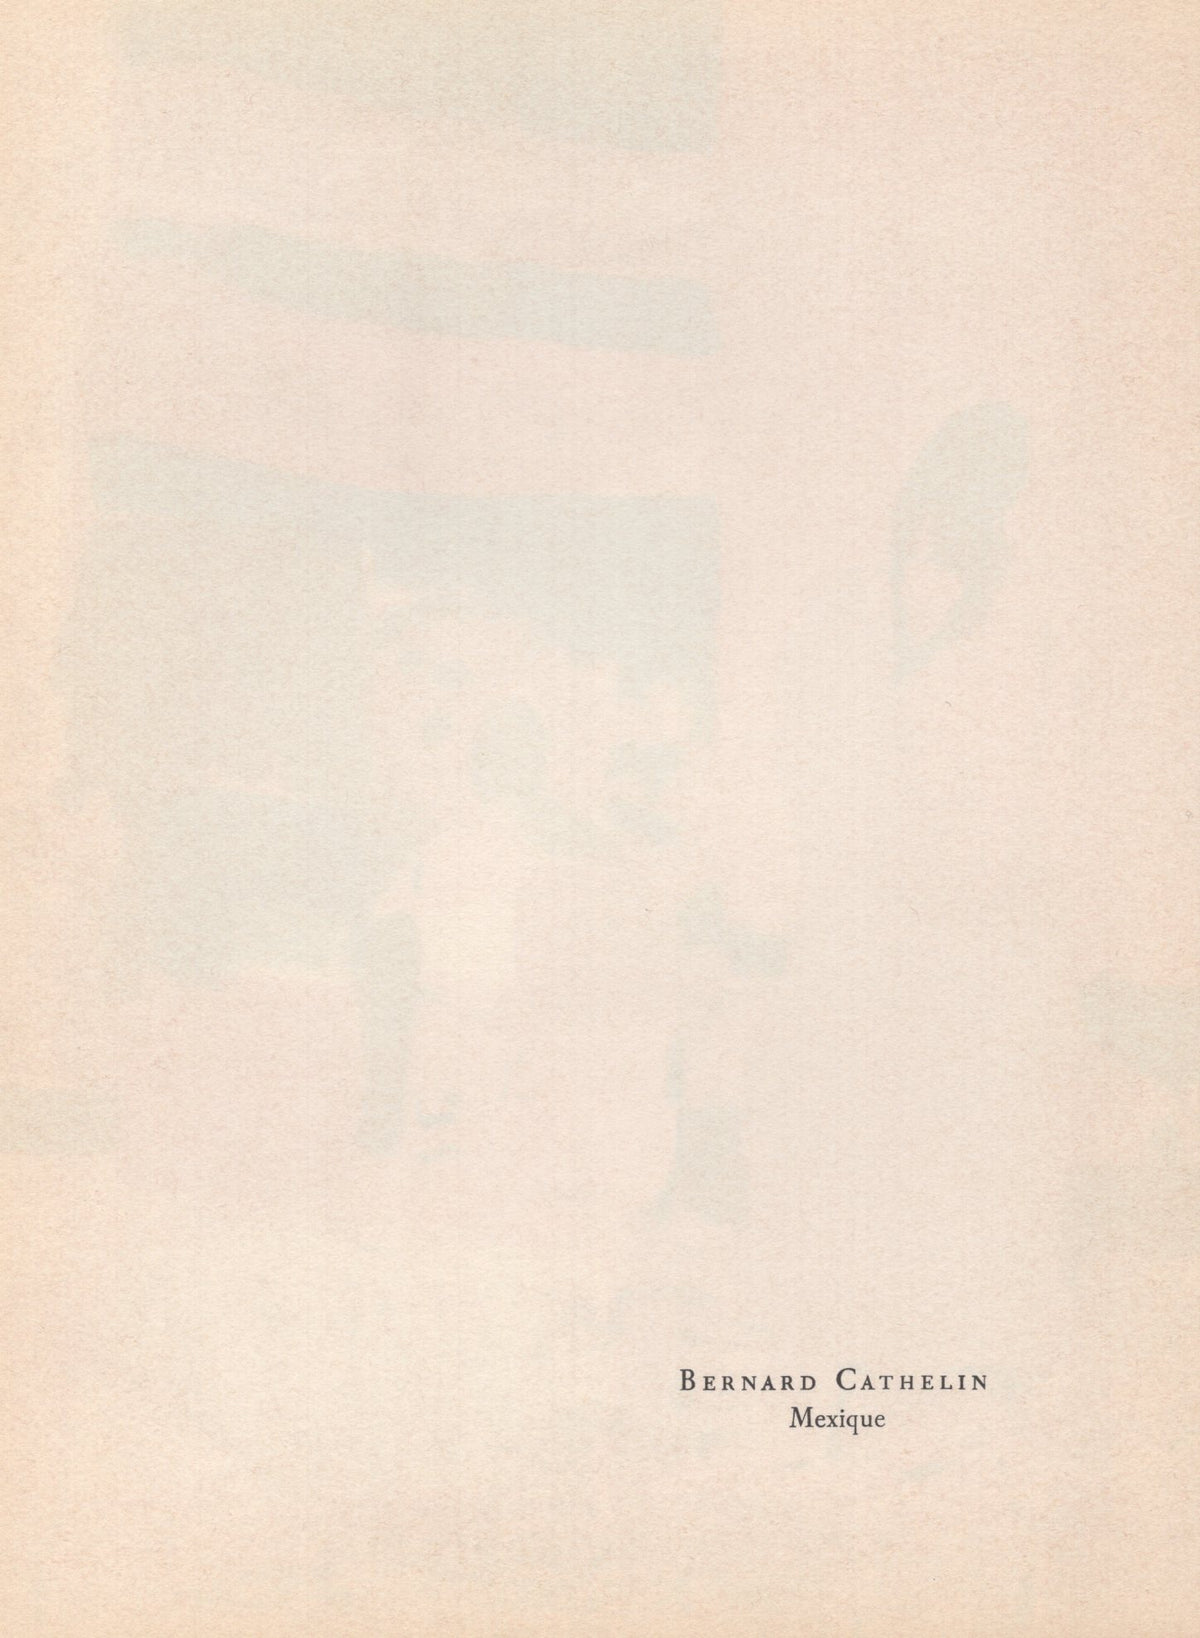 Bernard Cathelin - &quot;Mexique&quot; - Mourlot Press 1964 Lithograph - 7.5 x 10&quot;